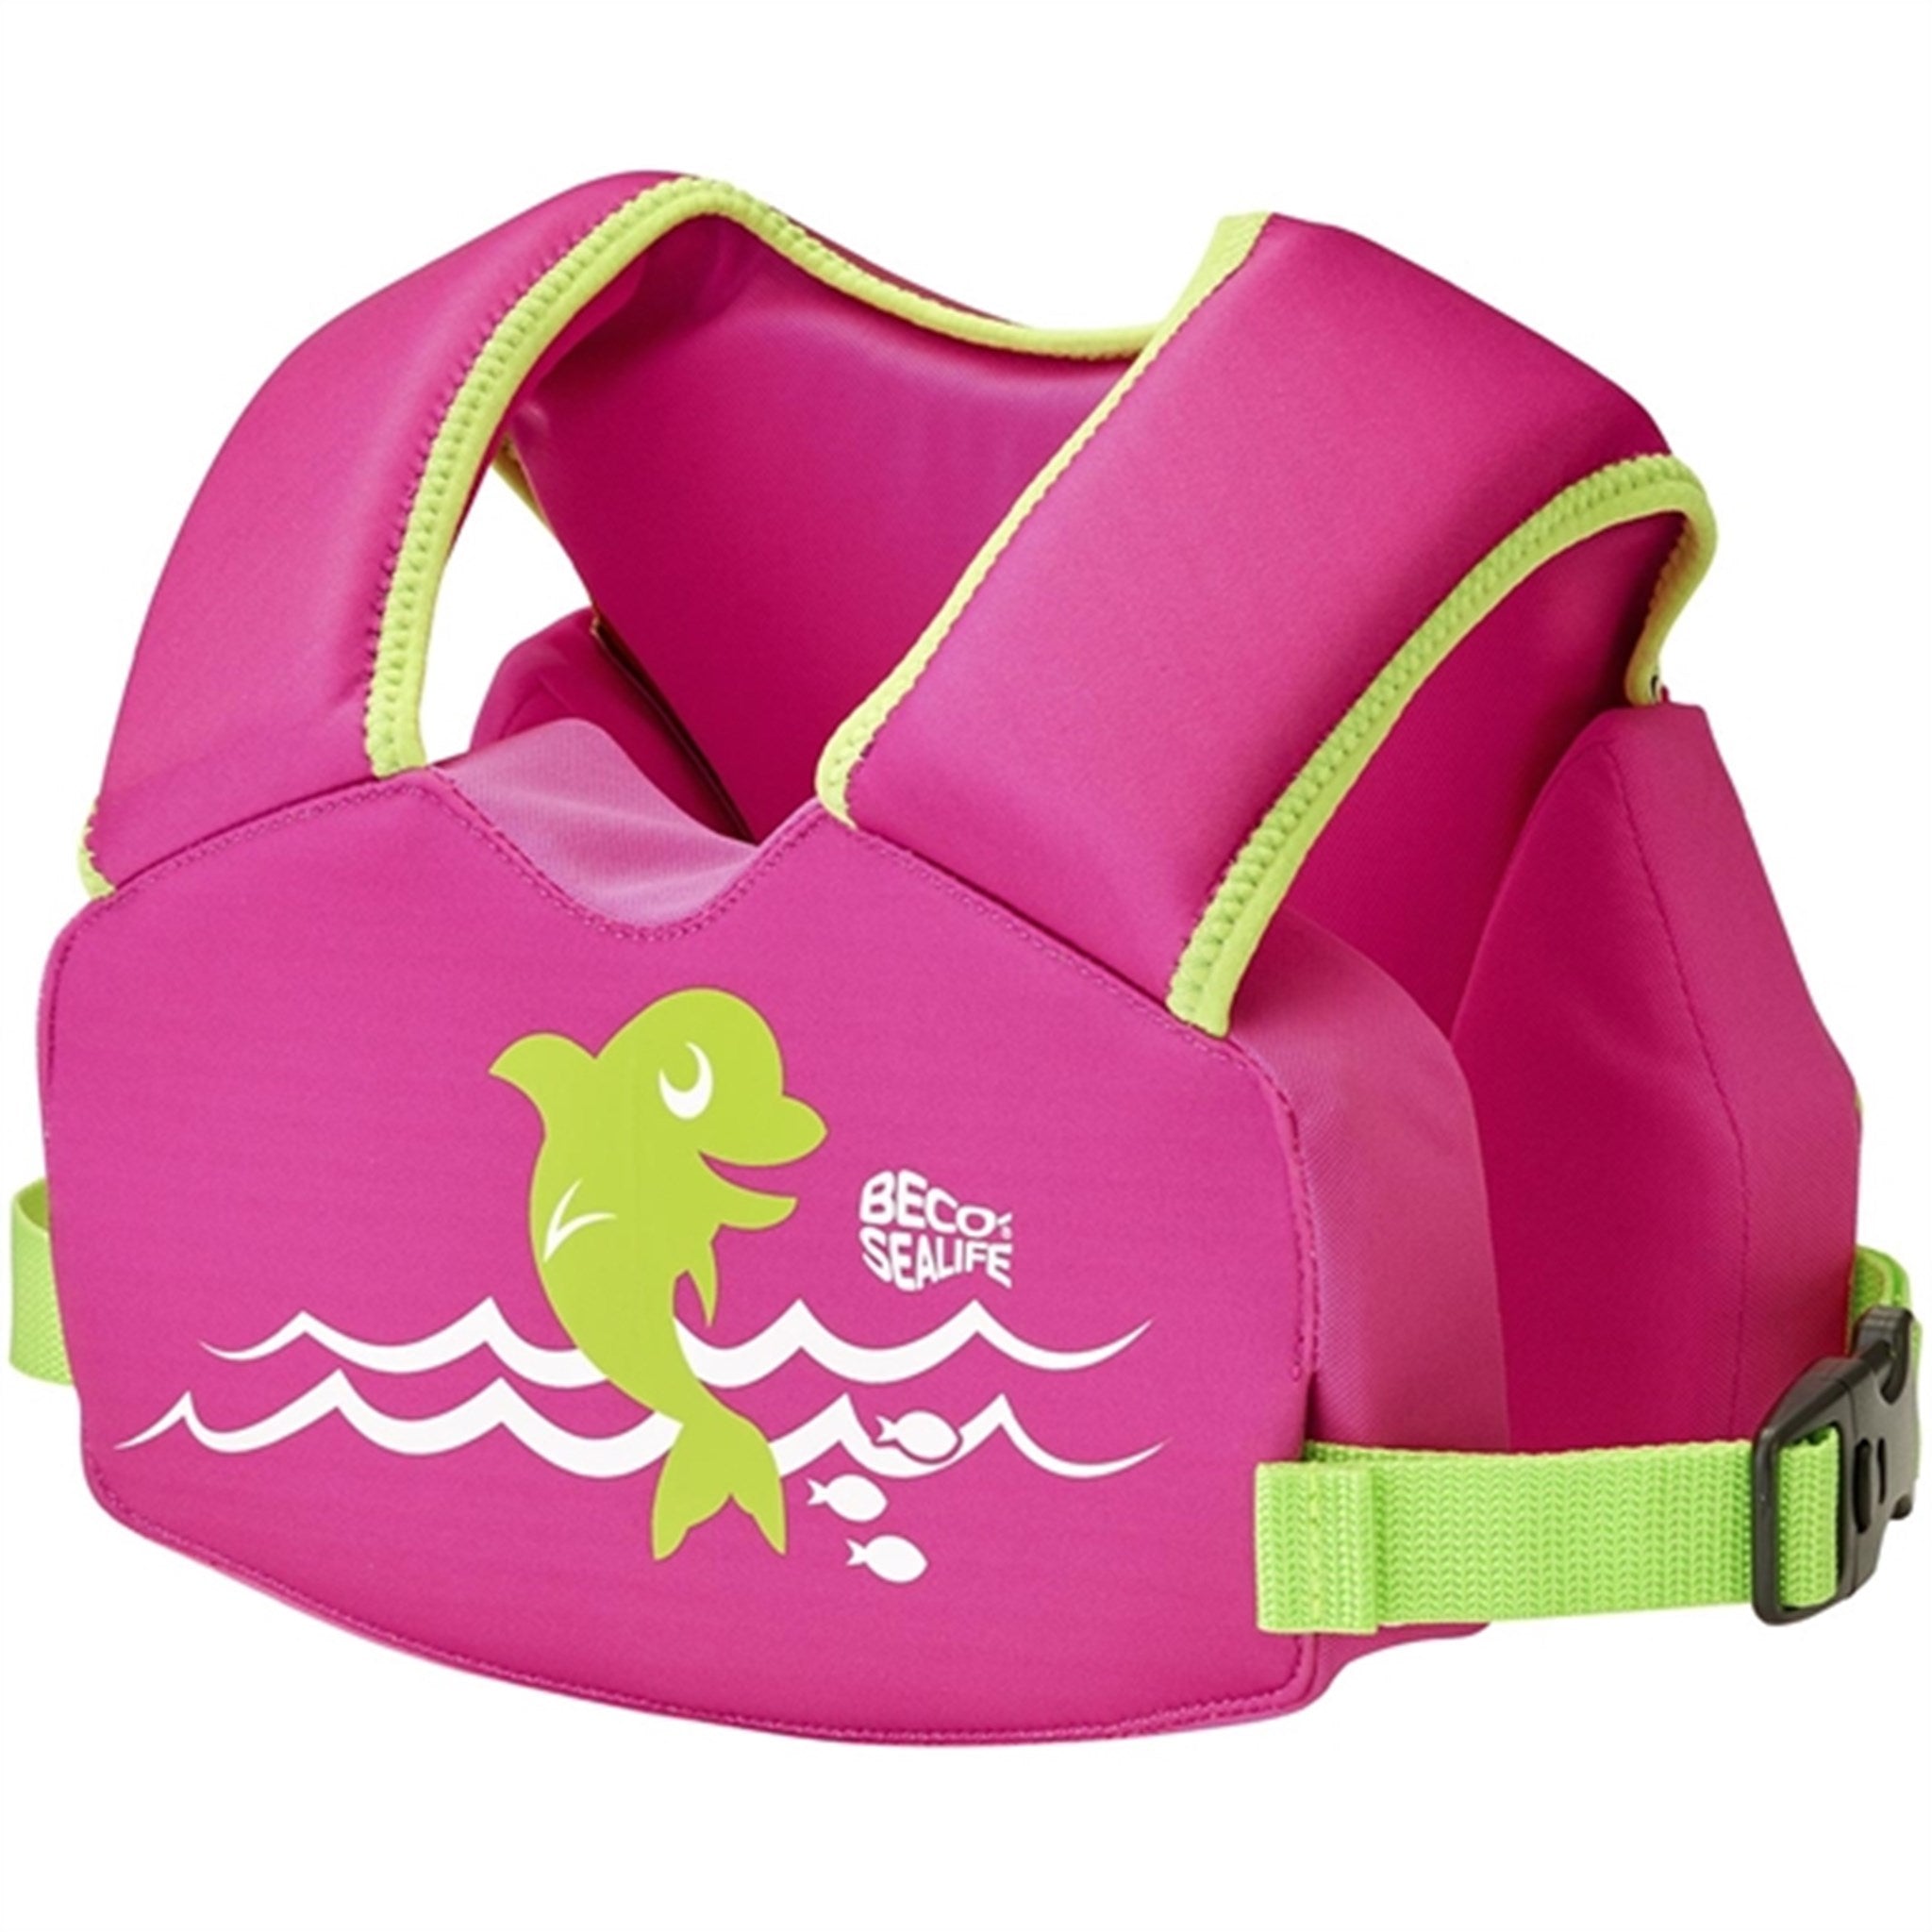 Beco Sealife Float Vest Easy-fit Pink